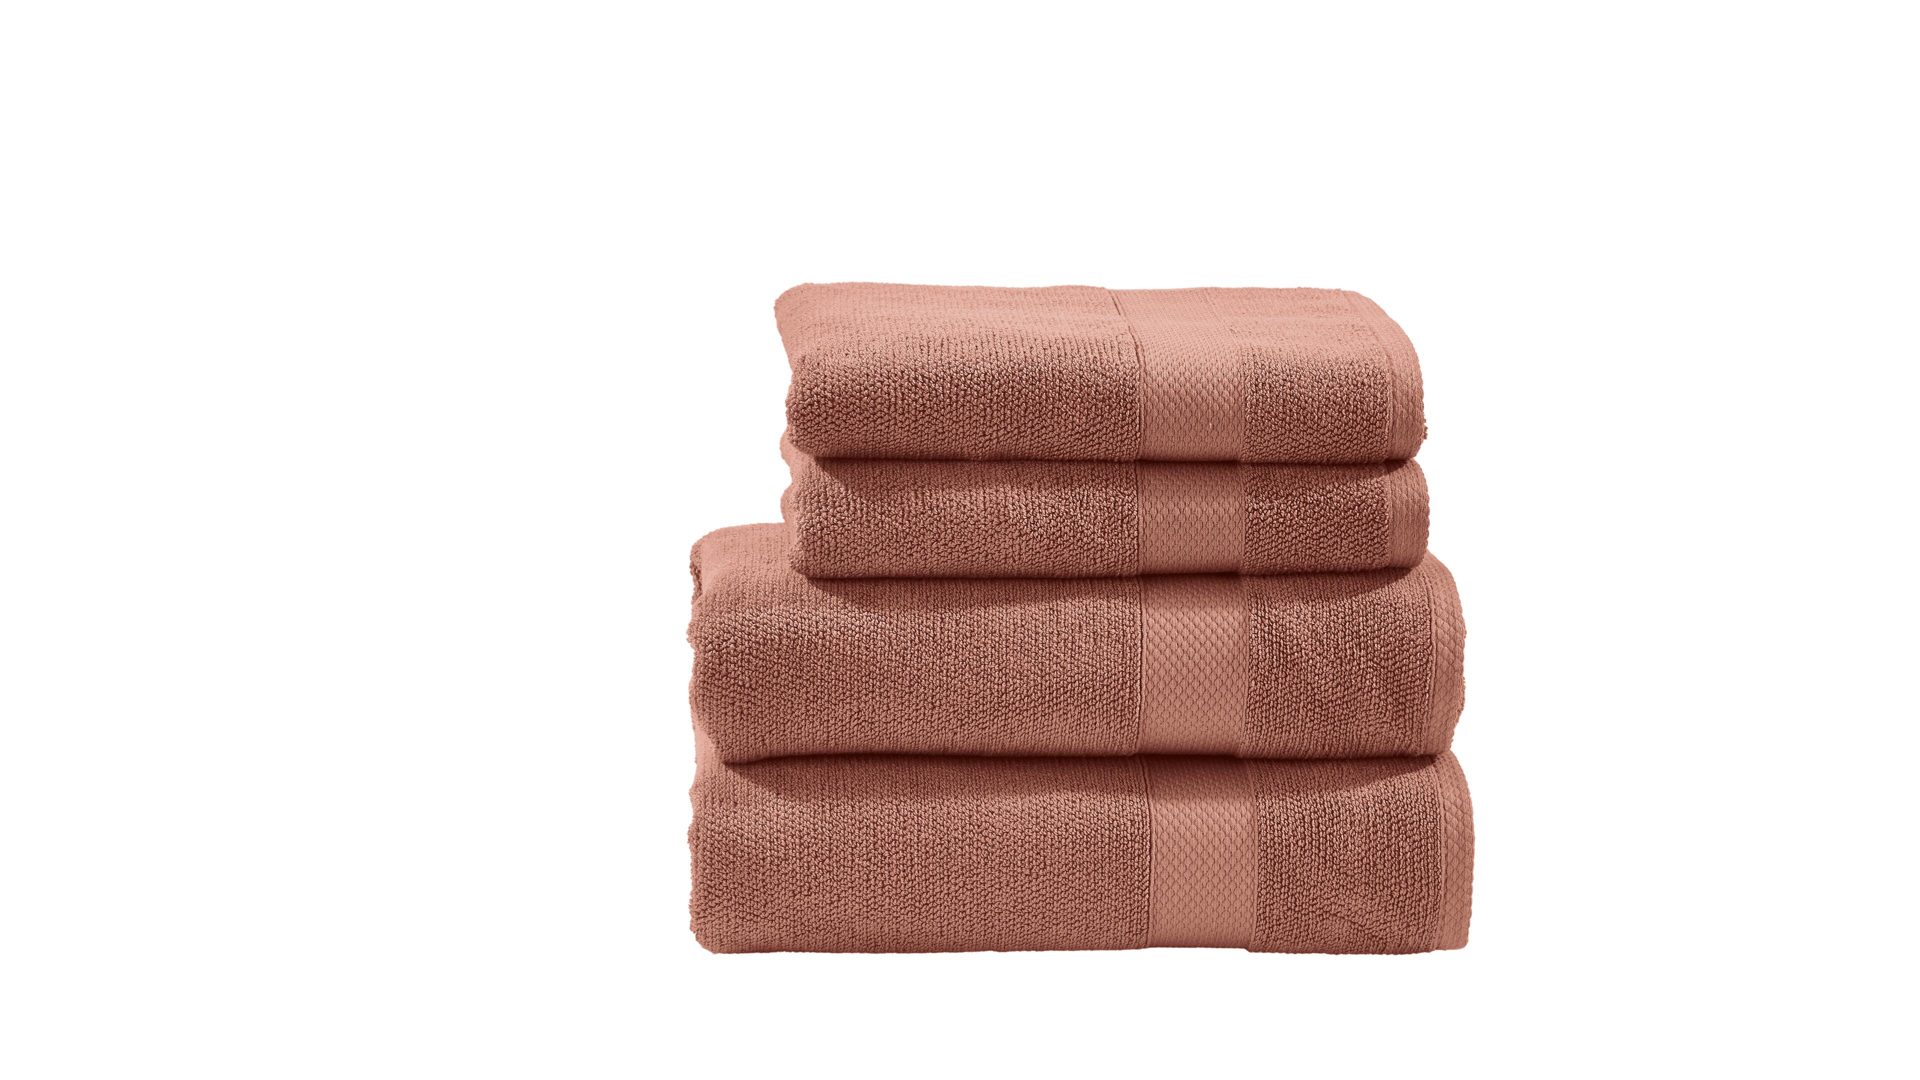 Handtuch-Set Done® be different aus Stoff in Rot DONE® Handtuch-Set Deluxe für Ihre Heimtextilien wüstensandfarbene Baumwolle – vierteilig